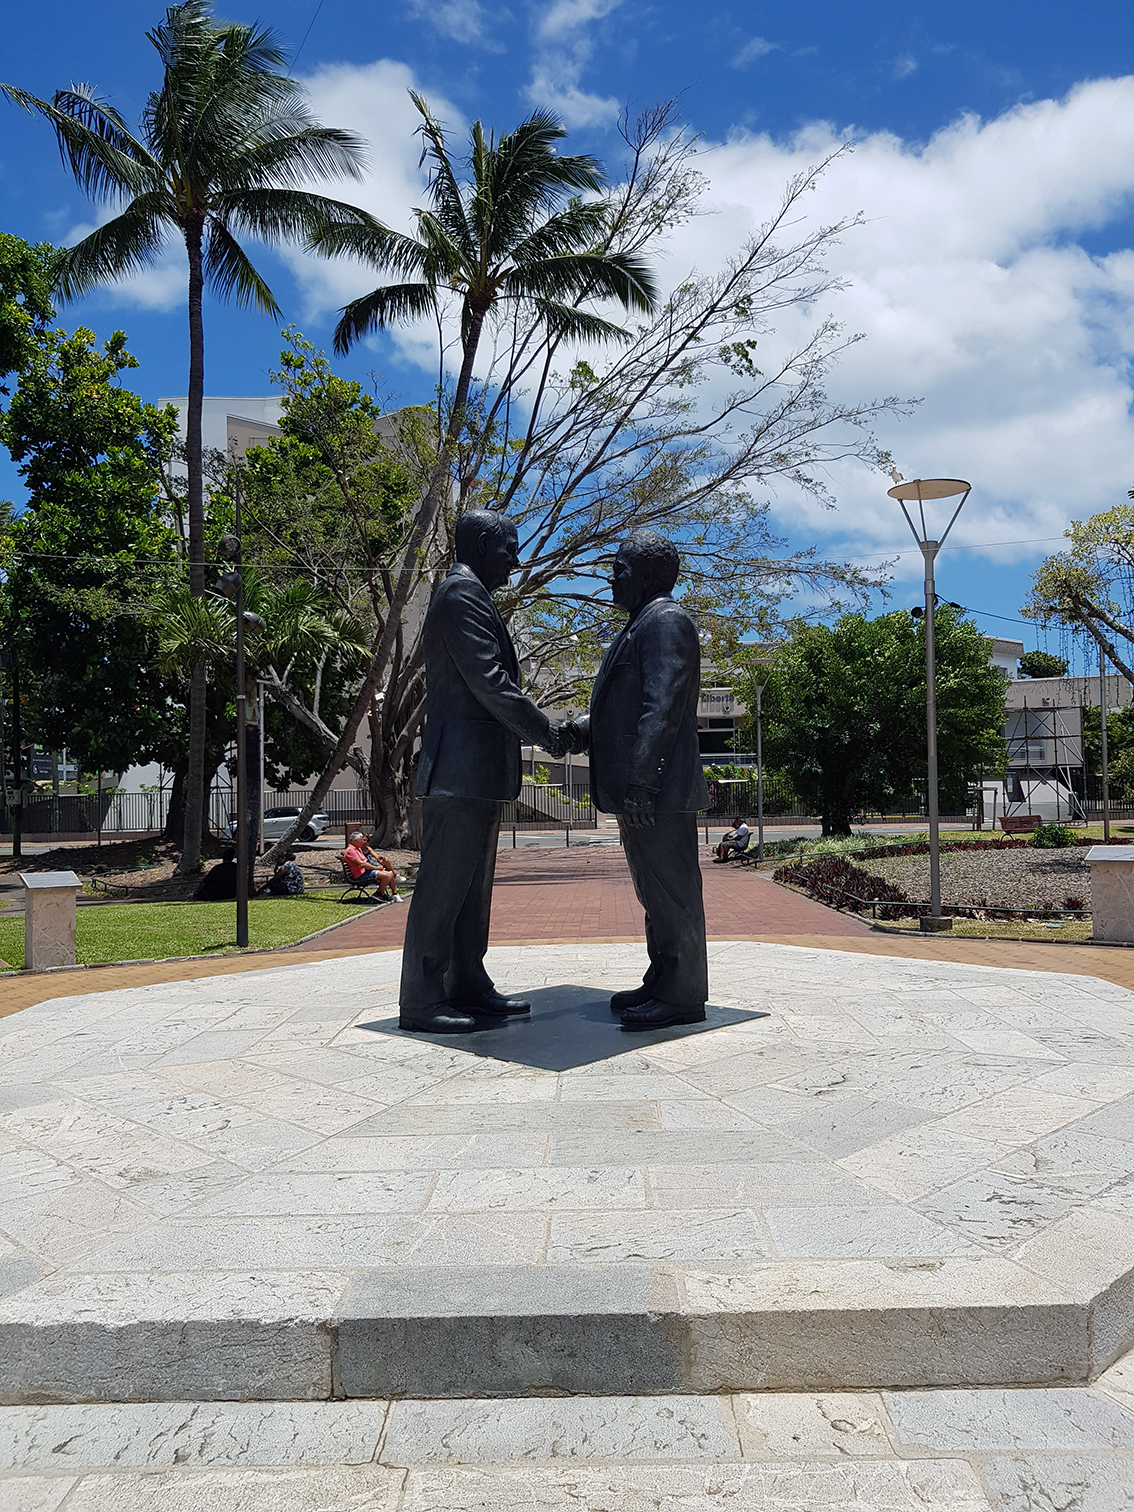 le monument de la paix, place des cocotiers à Nouméa représentant la poignée de main entre Jacques Lafleur et Jean-Marie Tjibaou en 1988